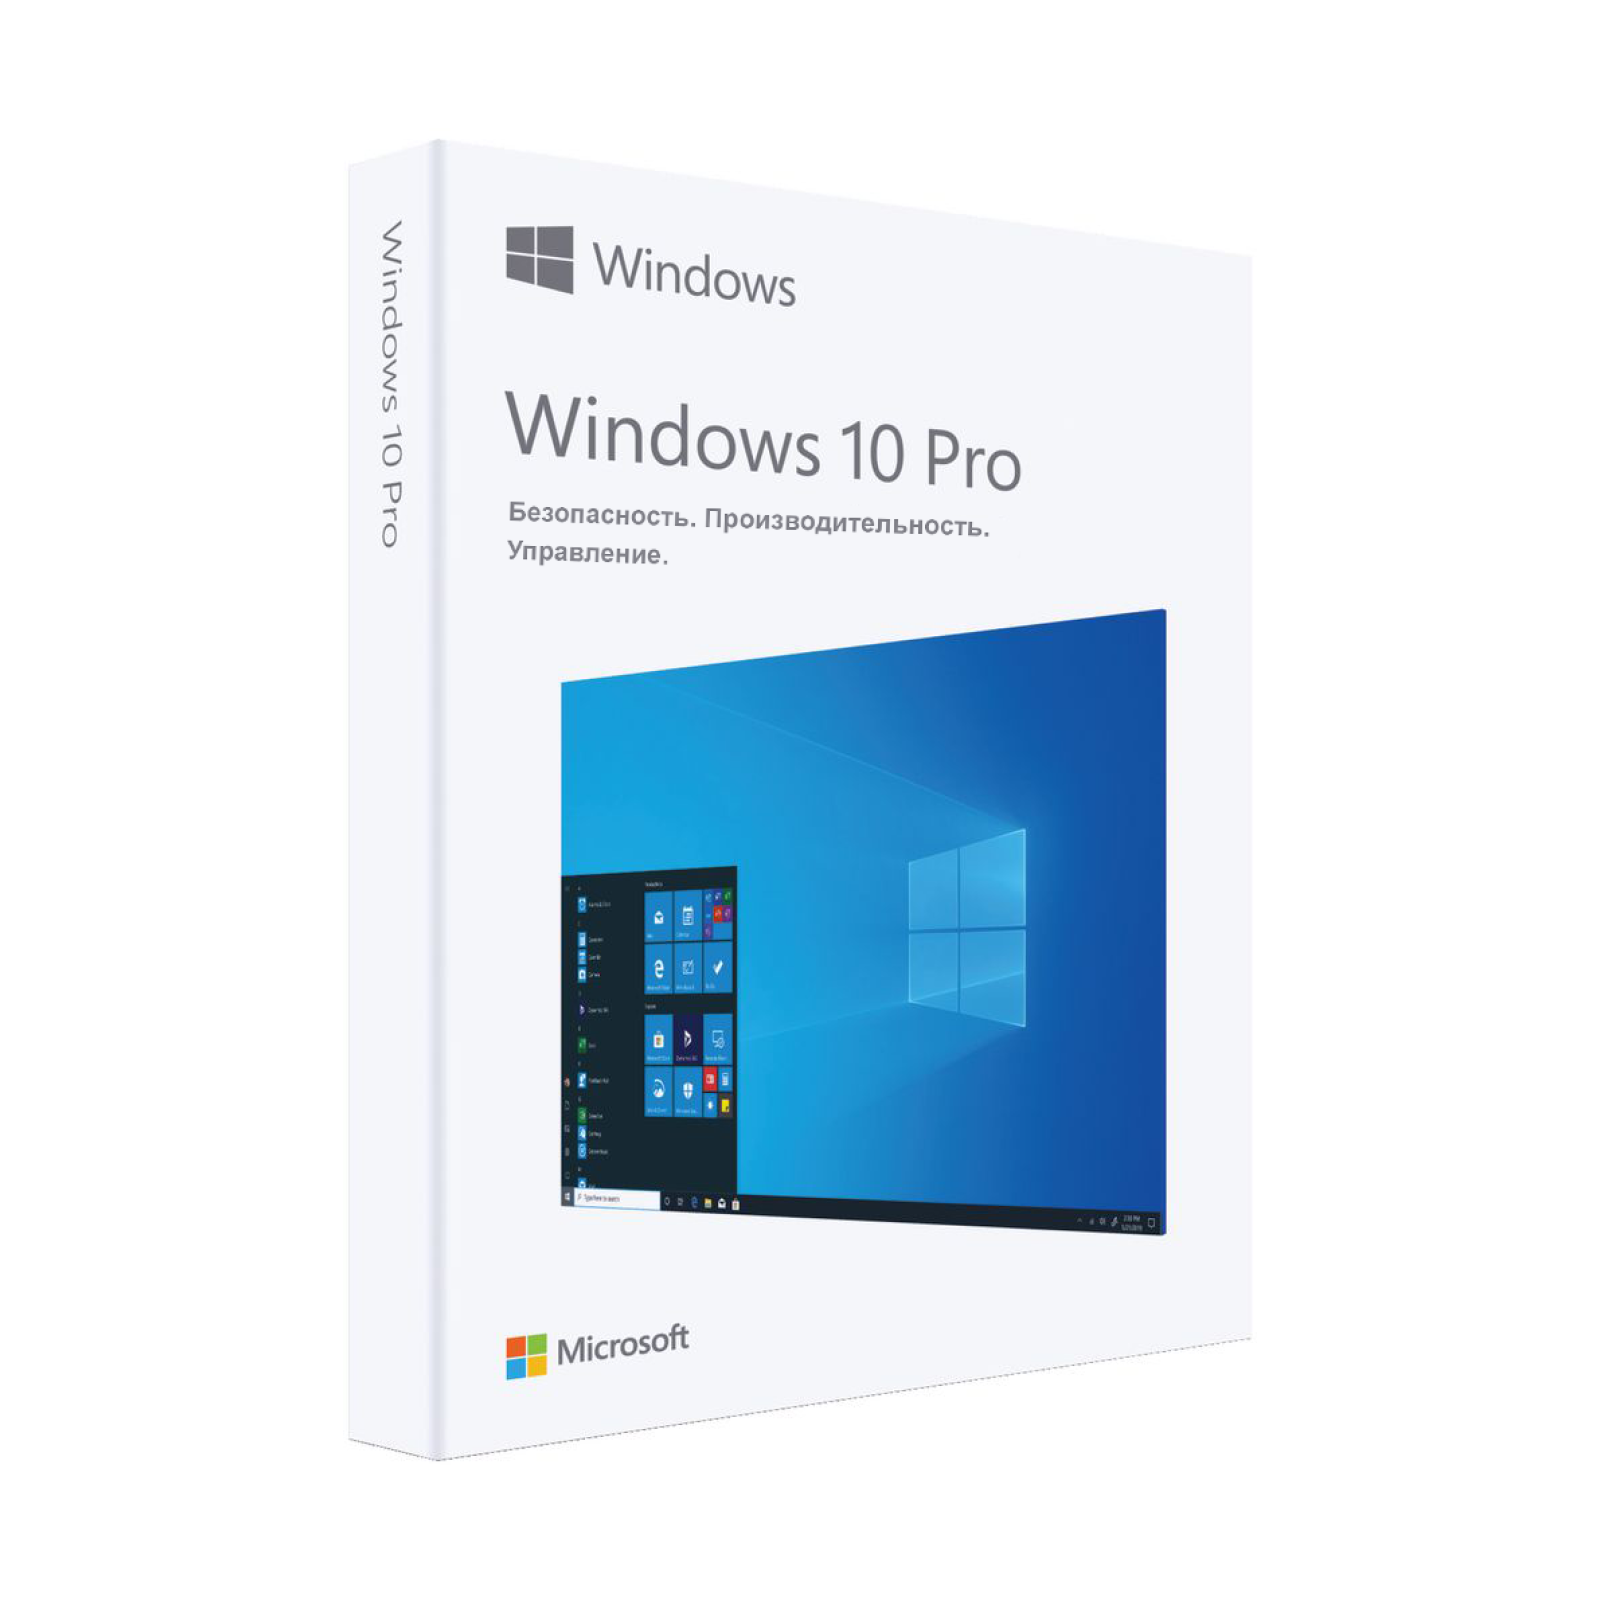 Купить лицензионные ключи активации для Windows 10 Pro (Профессиональная) - keysoft.store - Программы